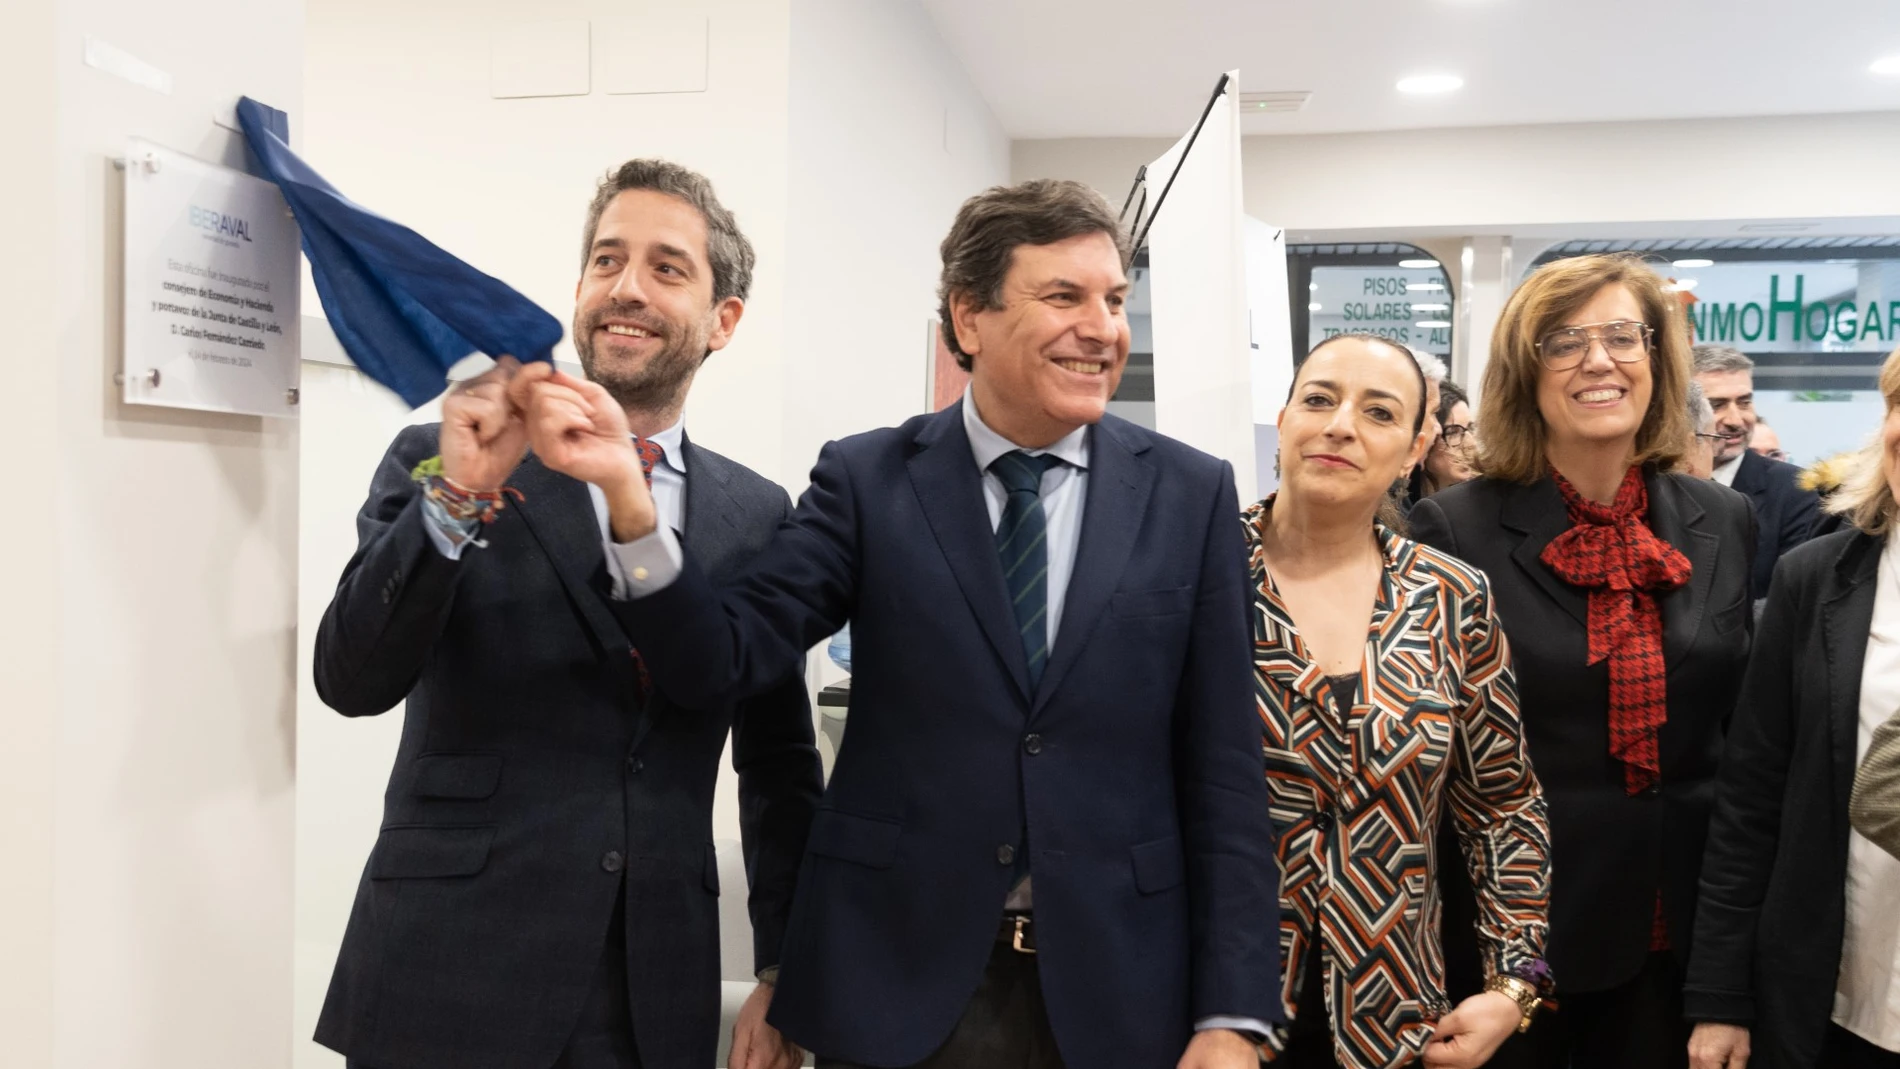 El presidente de Iberaval, César Pontvianne, inaugura la nueva sede de Palencia, junto a Carlos Fernández Carriedo, Ángeles Armisén y Miriam Andrés